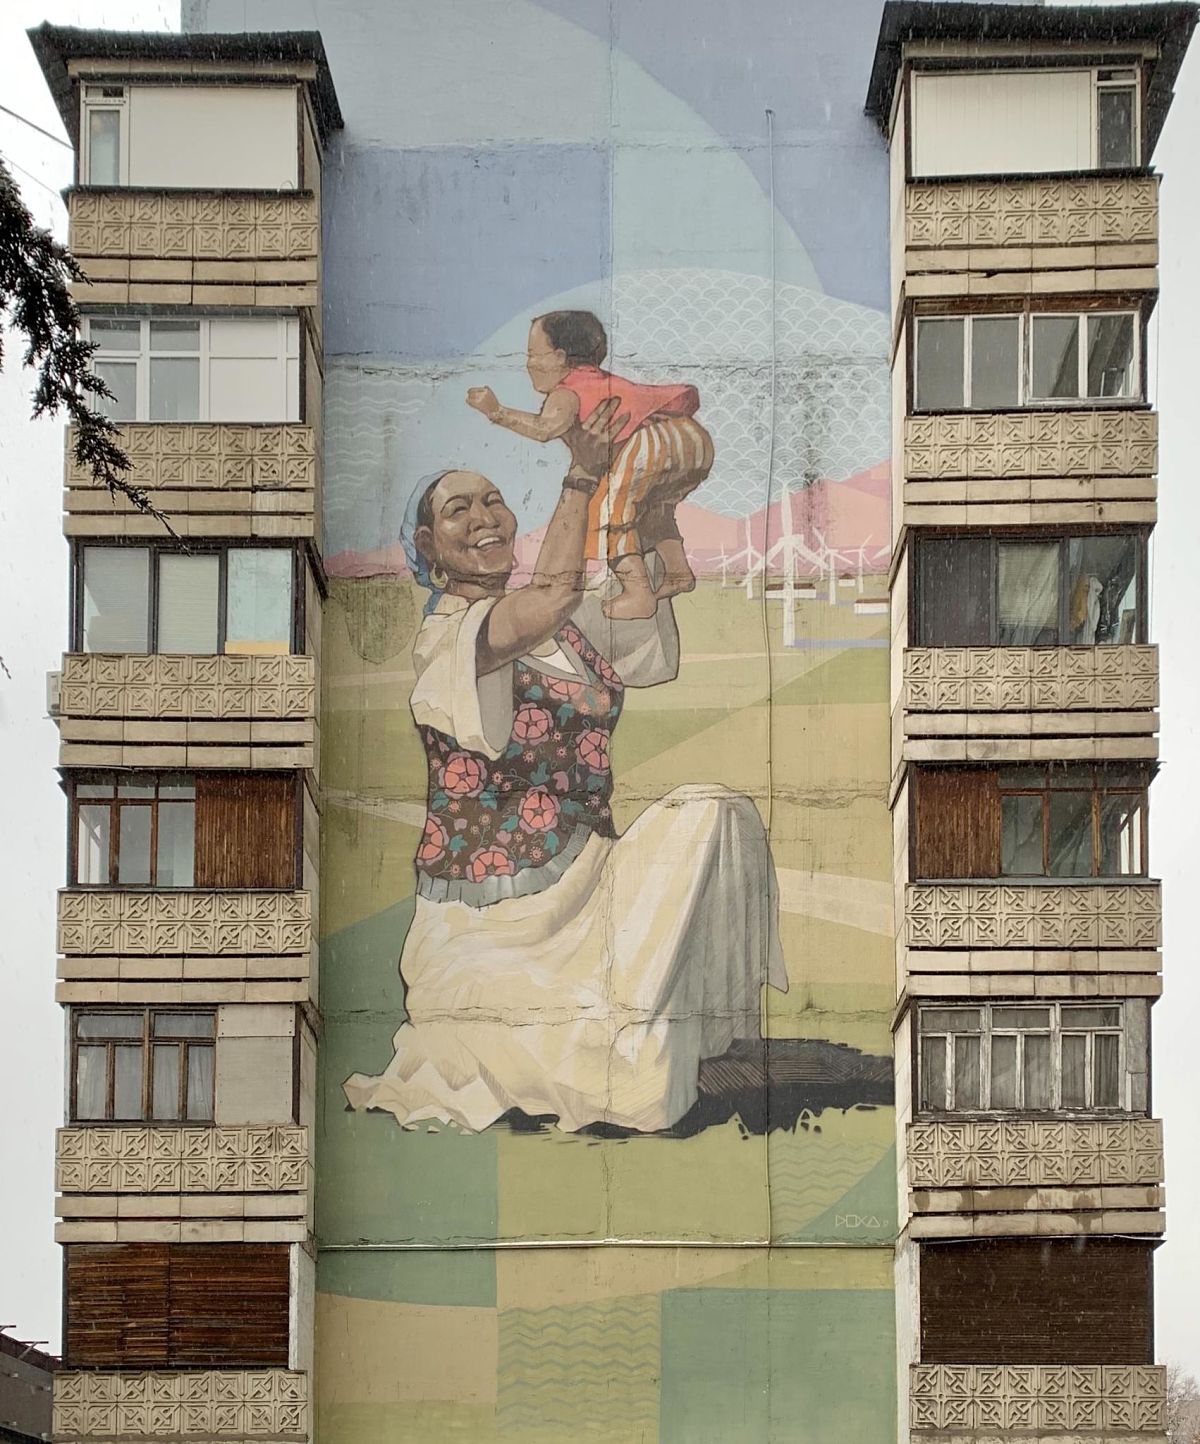 art on a building in Almaty